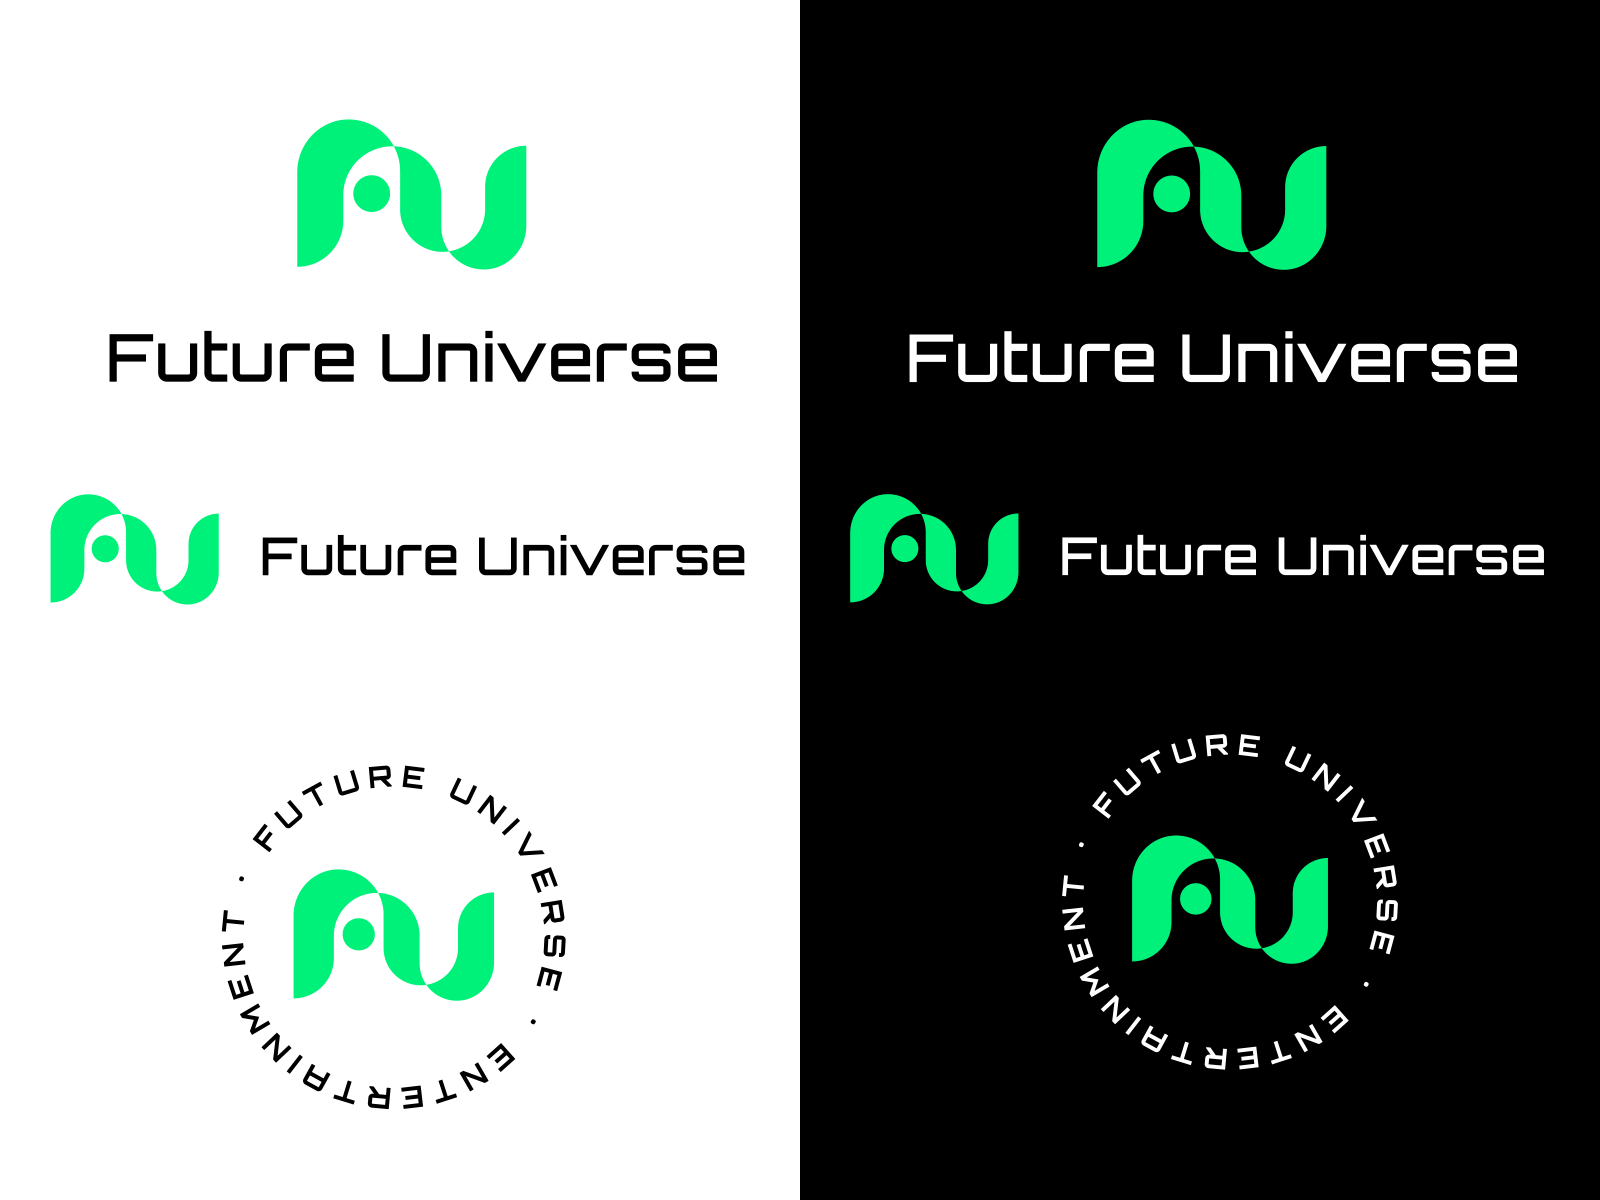 Future Universe Color Guide